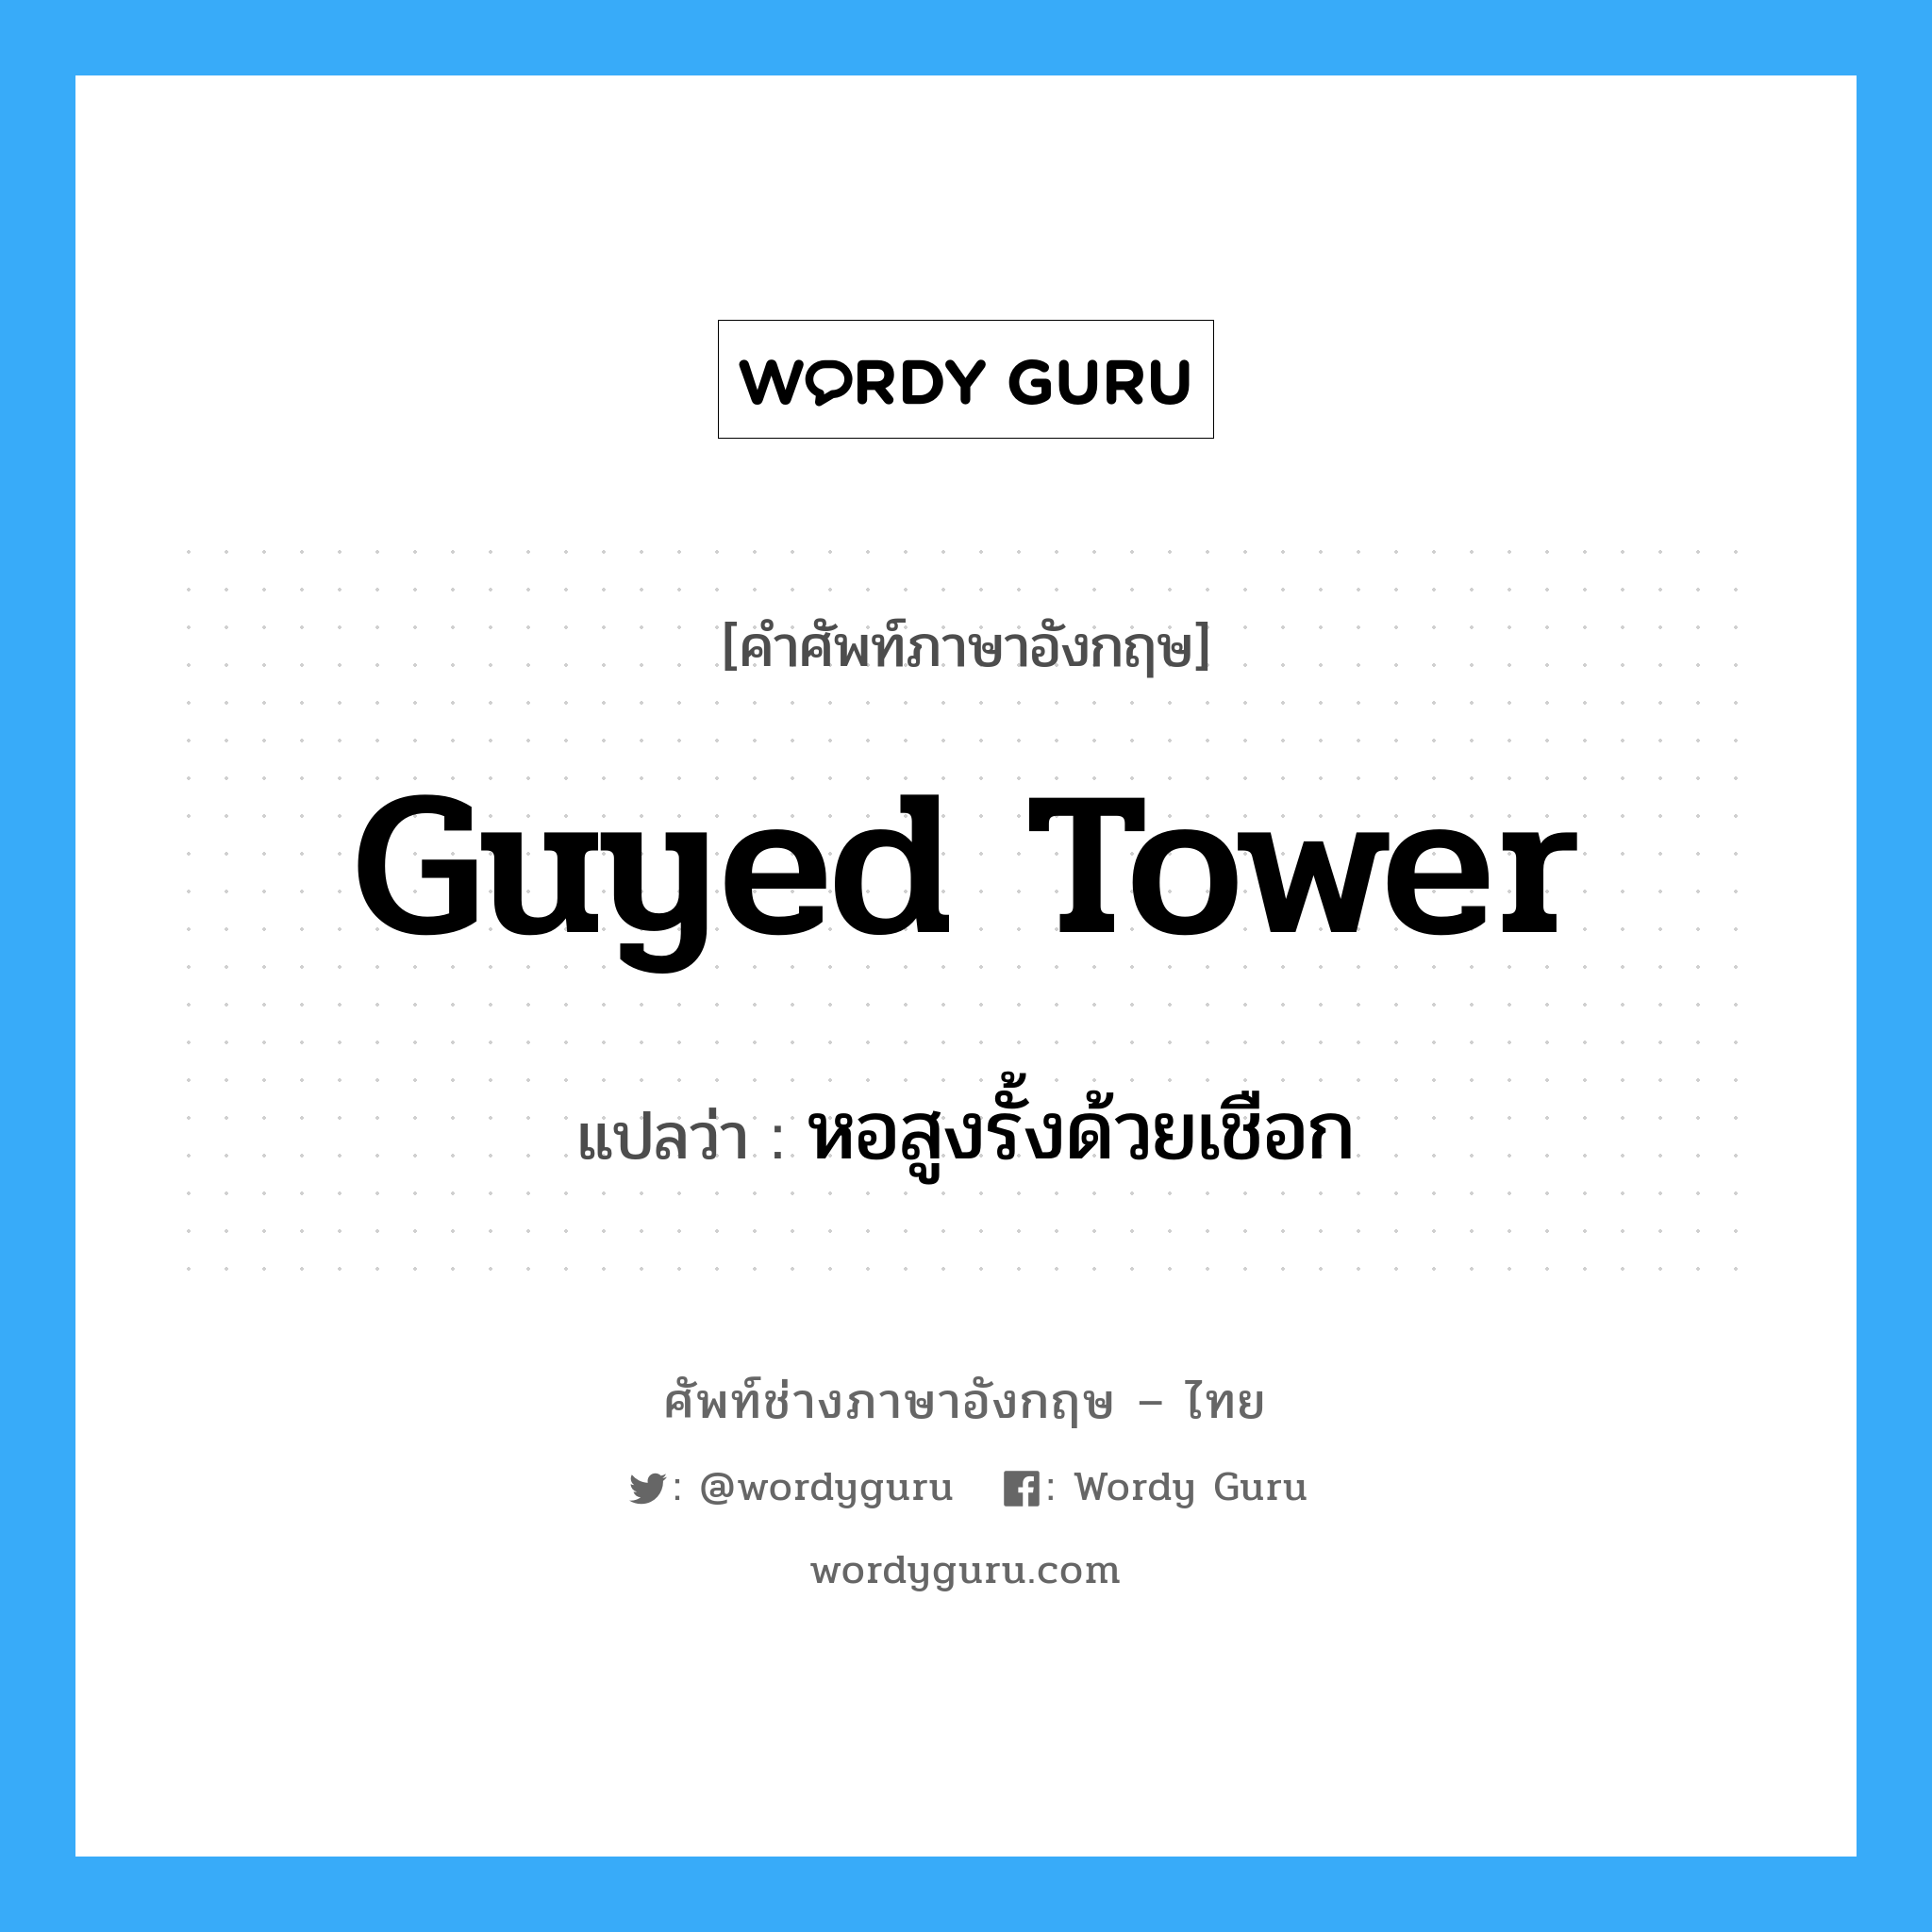 หอสูงรั้งด้วยเชือก ภาษาอังกฤษ?, คำศัพท์ช่างภาษาอังกฤษ - ไทย หอสูงรั้งด้วยเชือก คำศัพท์ภาษาอังกฤษ หอสูงรั้งด้วยเชือก แปลว่า guyed tower